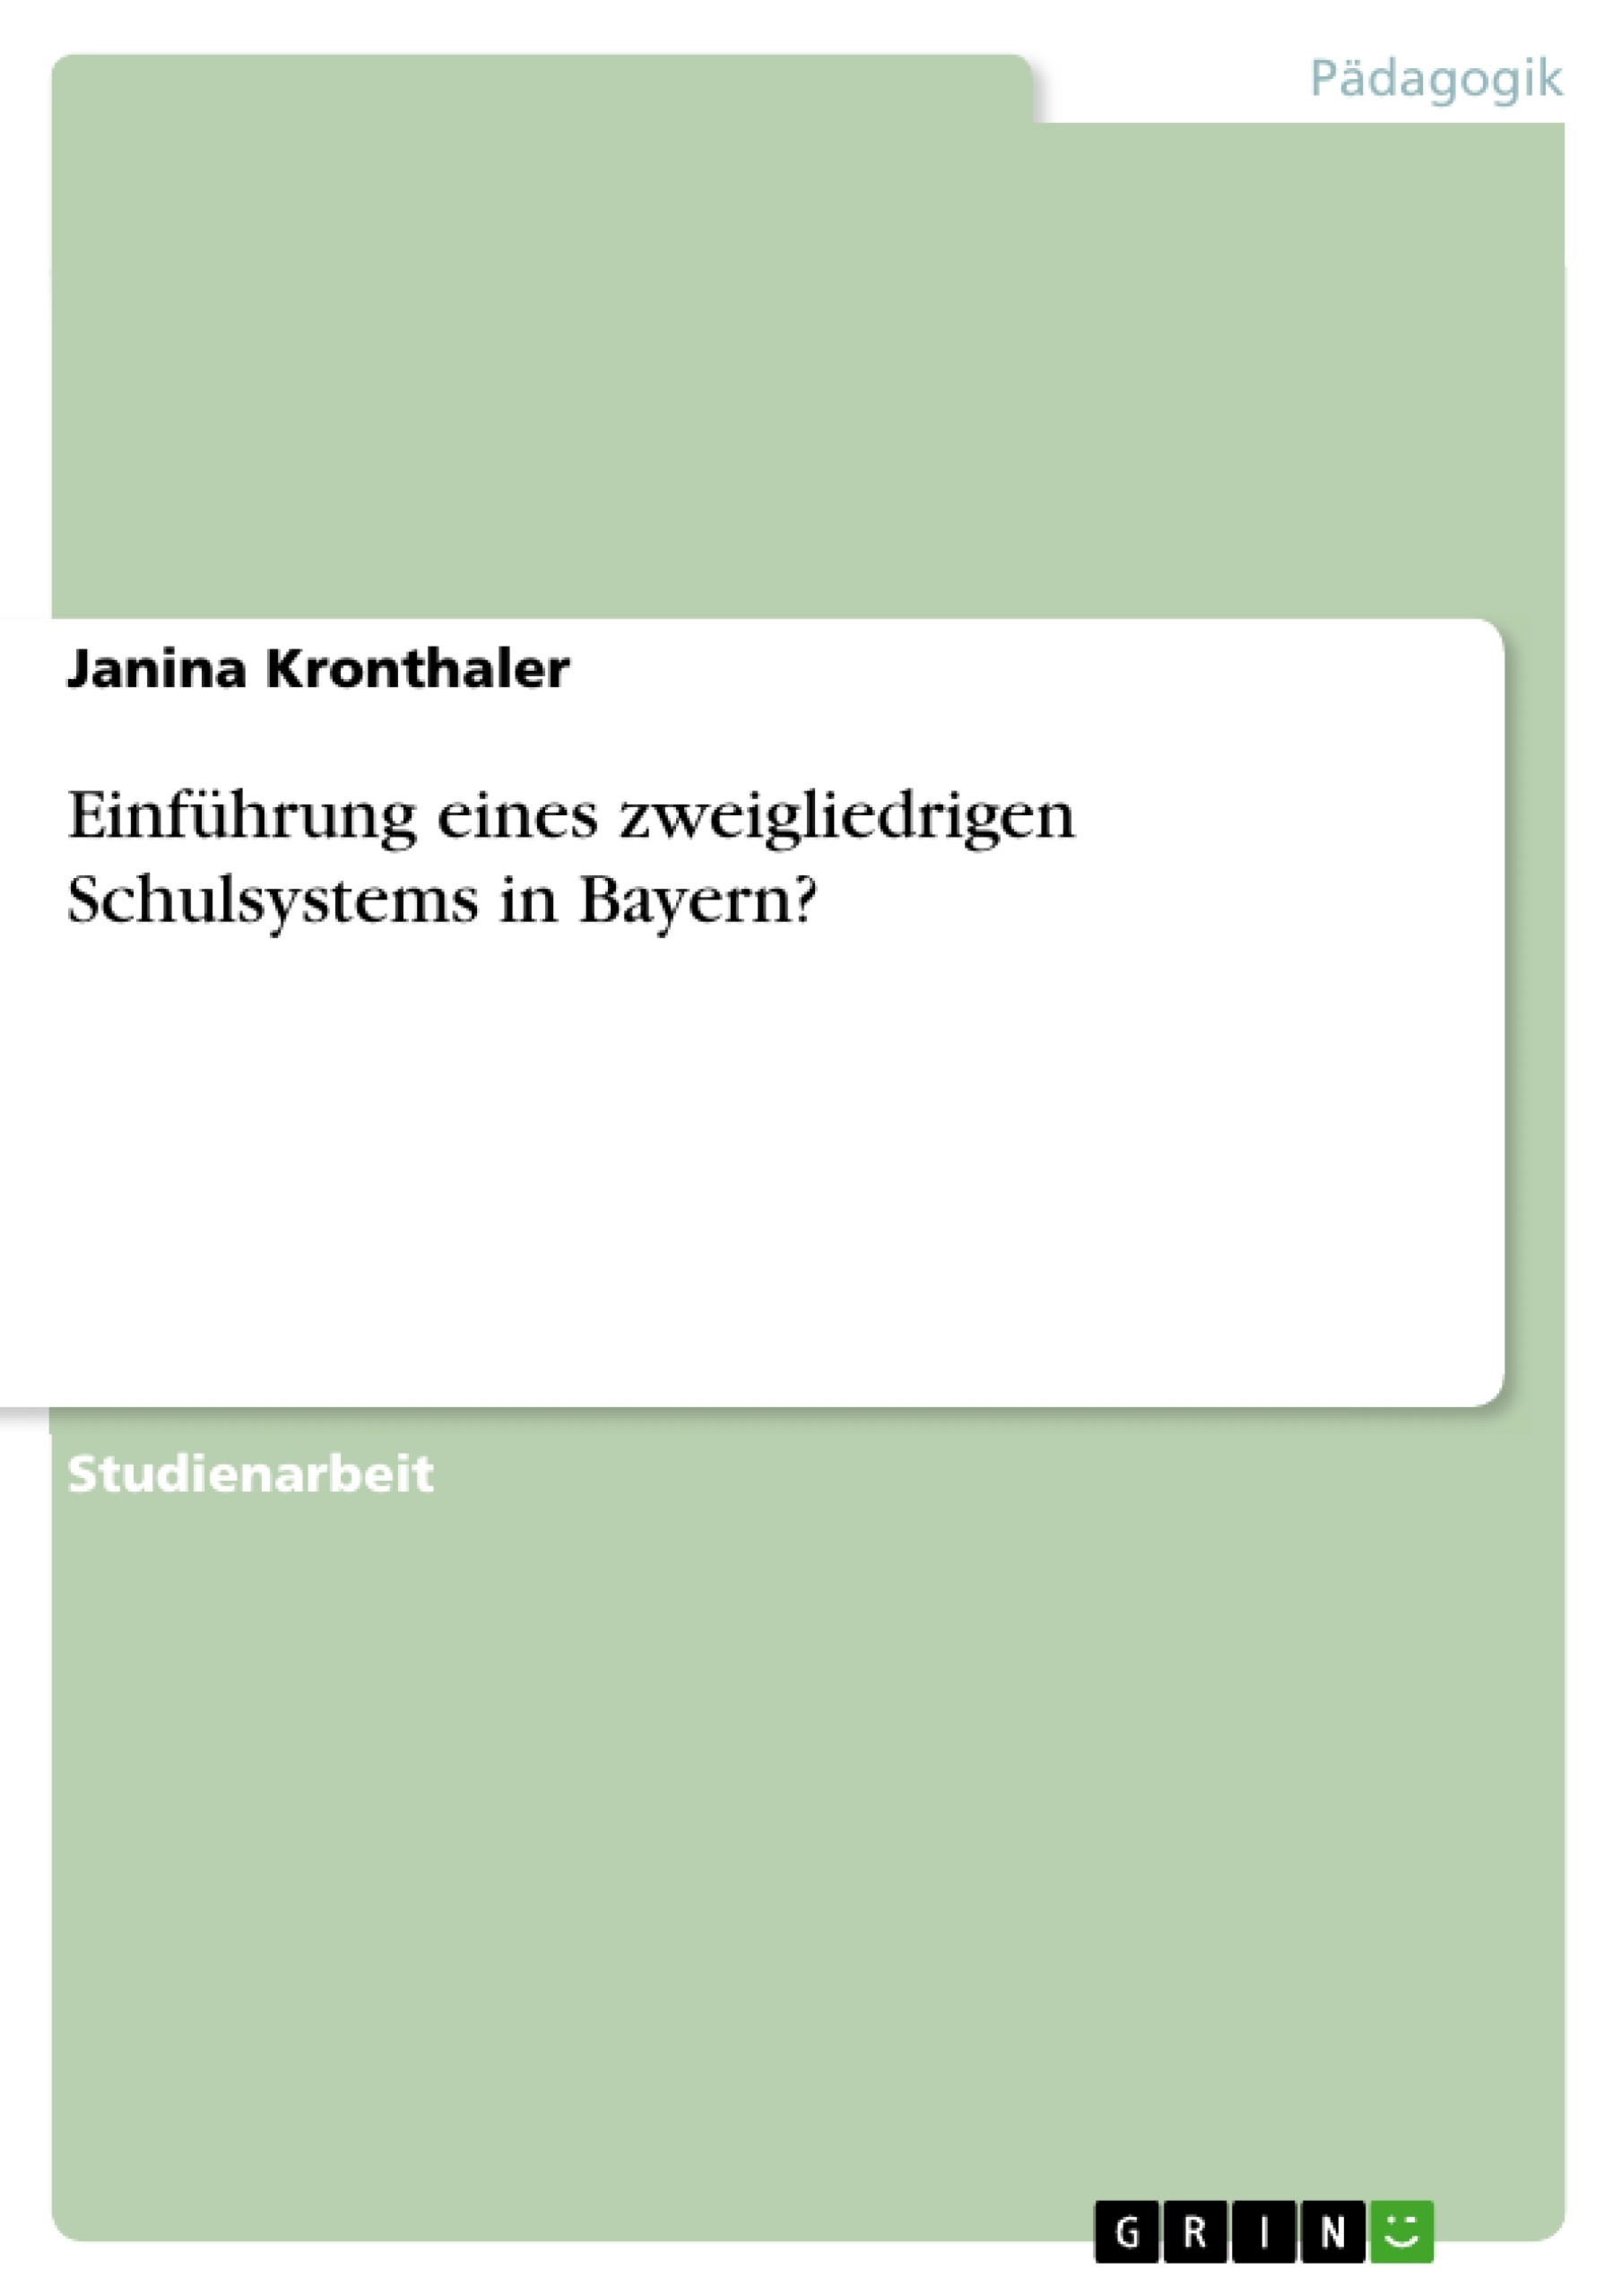 Título: Einführung eines zweigliedrigen Schulsystems in Bayern?